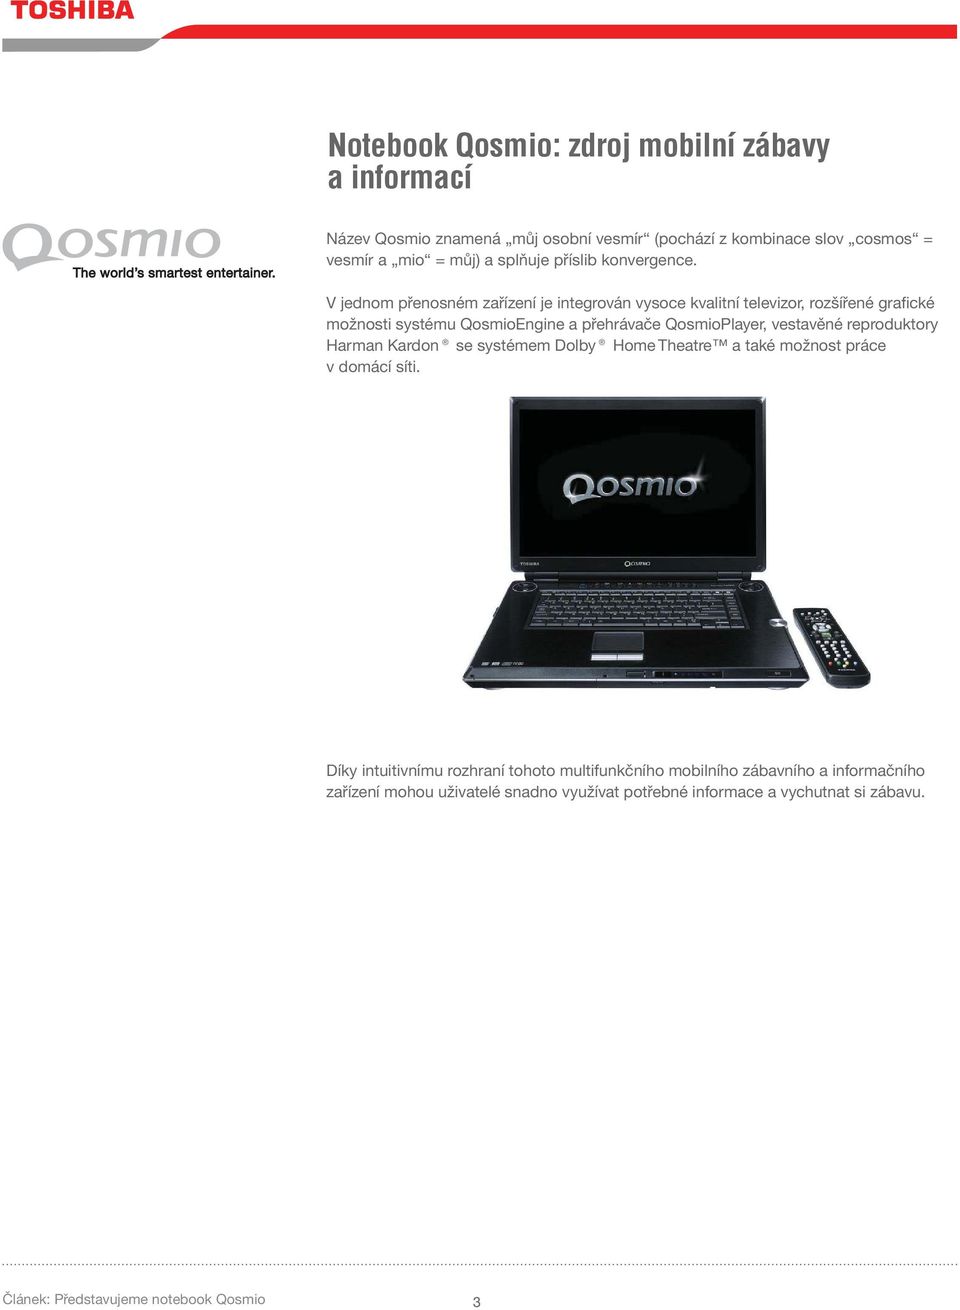 V jednom přenosném zařízení je integrován vysoce kvalitní televizor, rozšířené grafické možnosti systému QosmioEngine a přehrávače QosmioPlayer, vestavěné